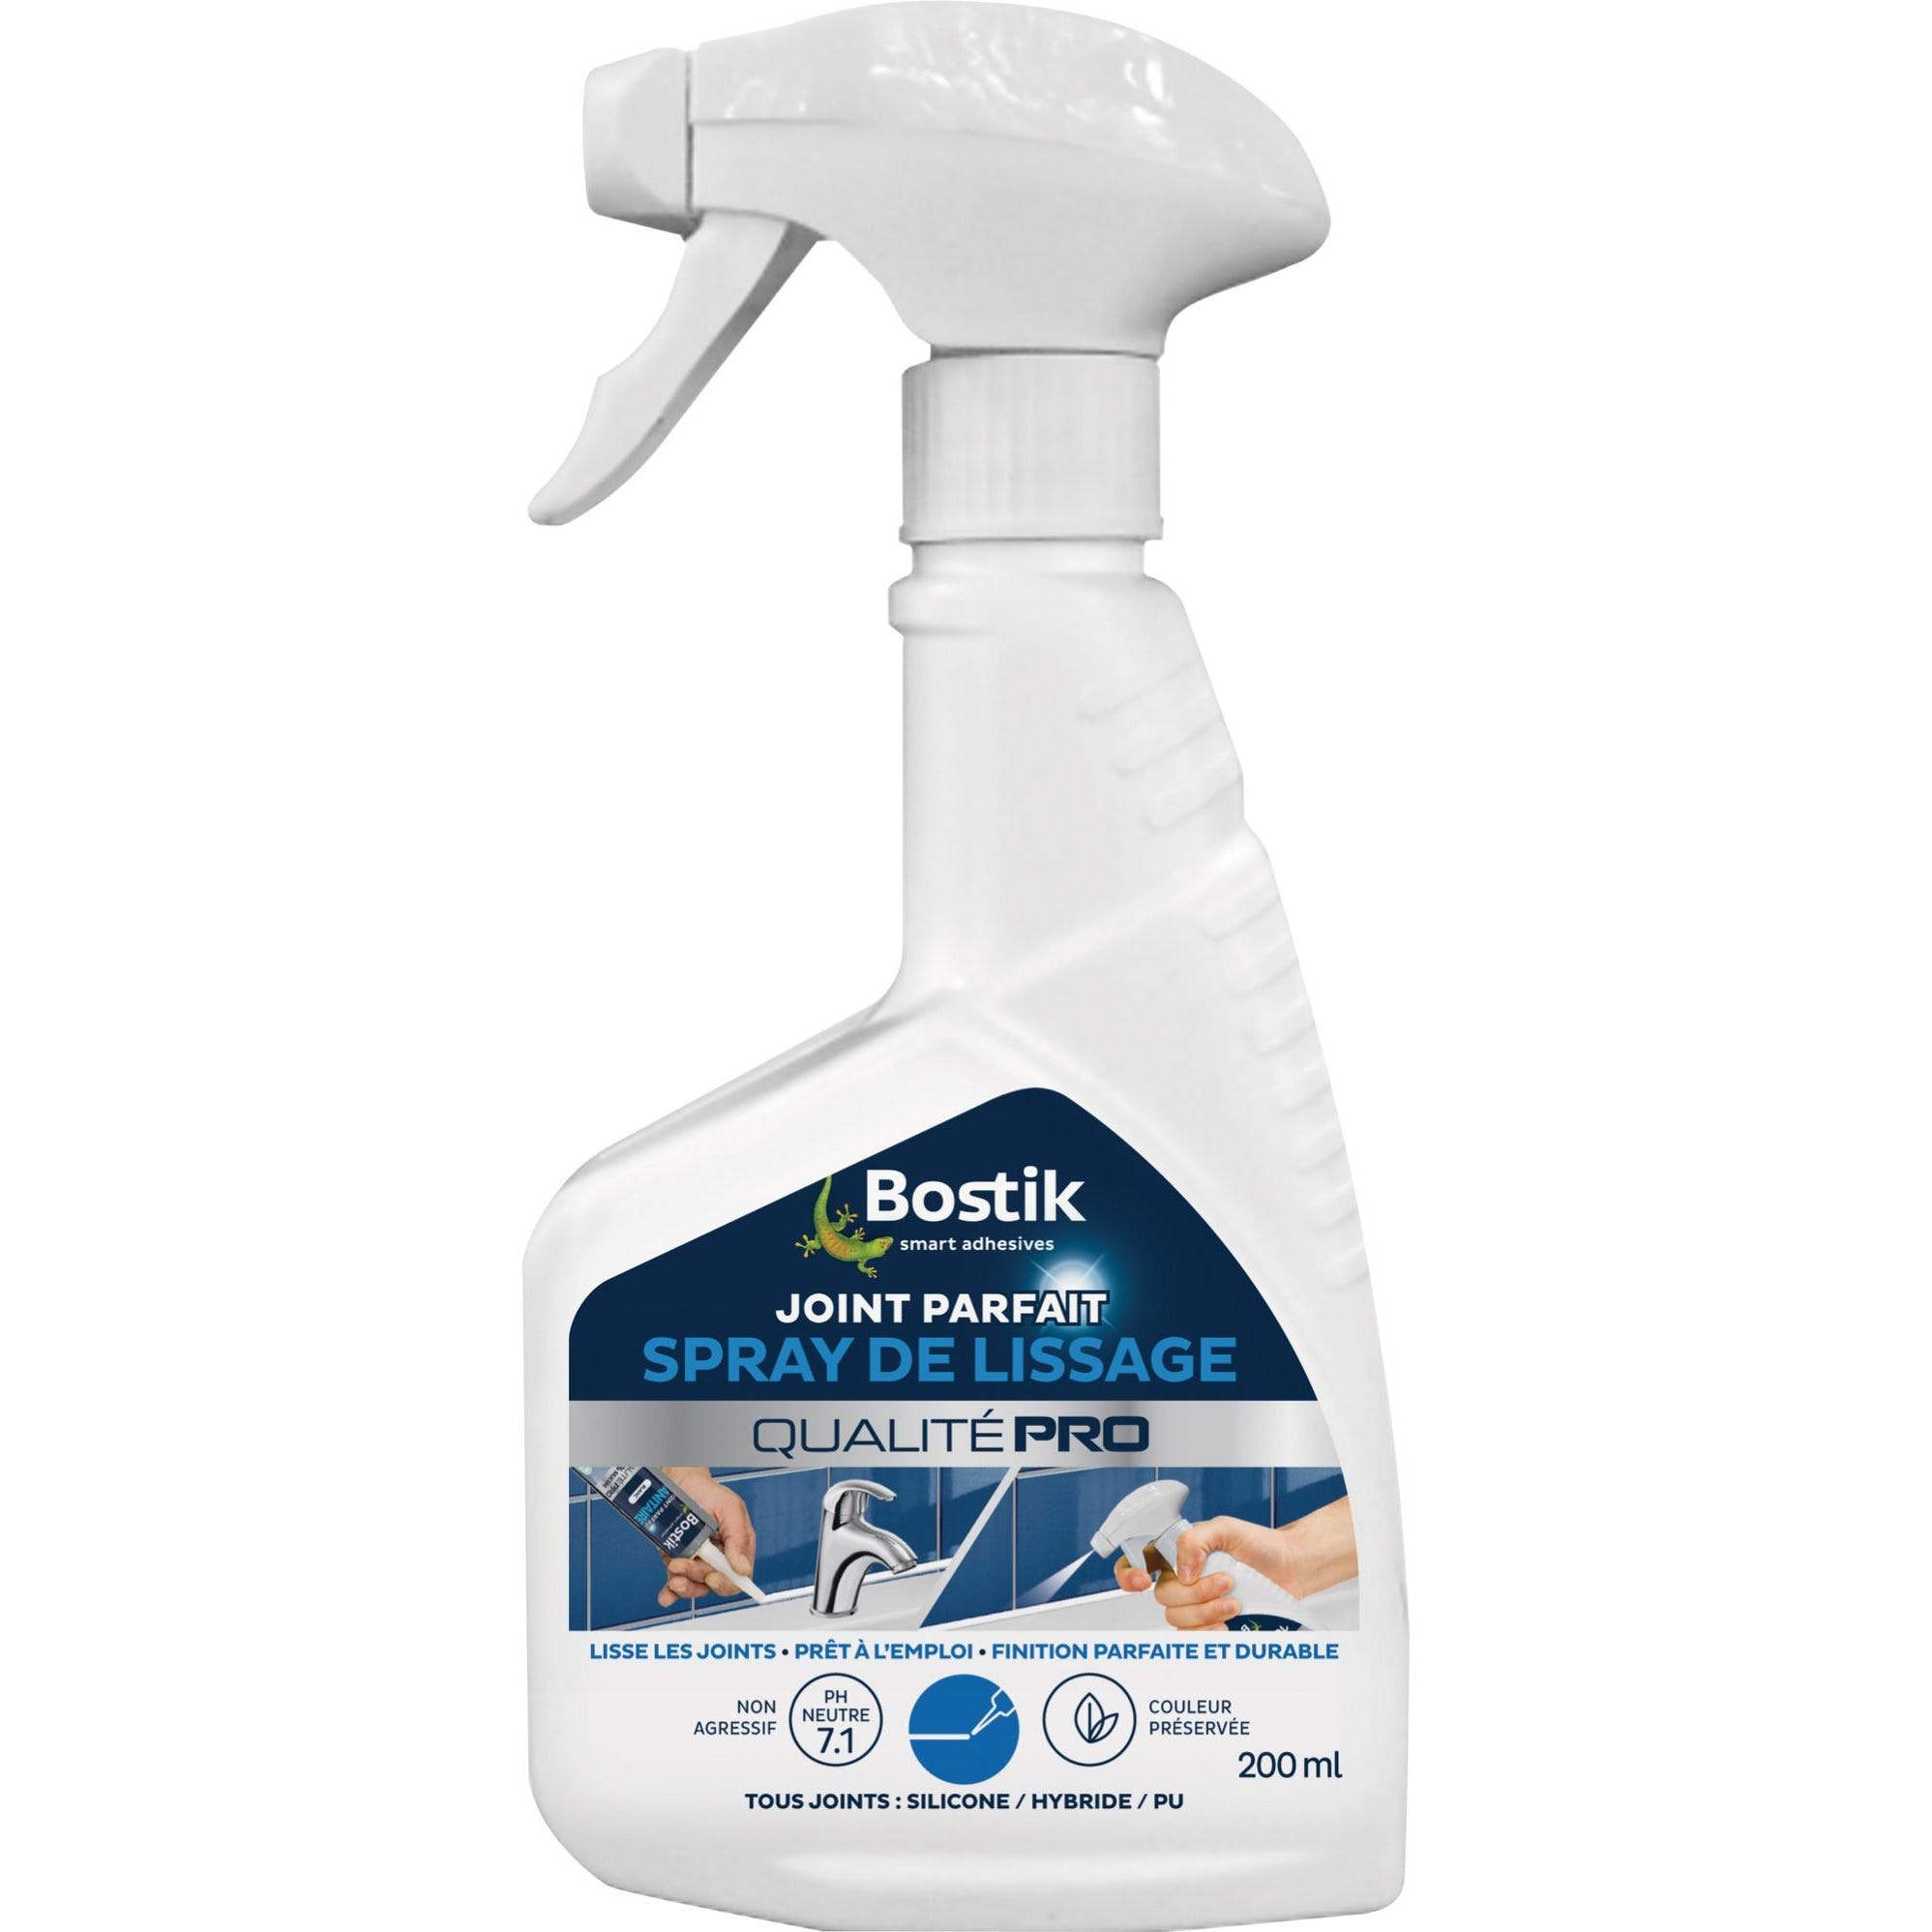 Spray de lissage - Joint parfait - 200 ml - Prêt à l'emploi - Bostik 0